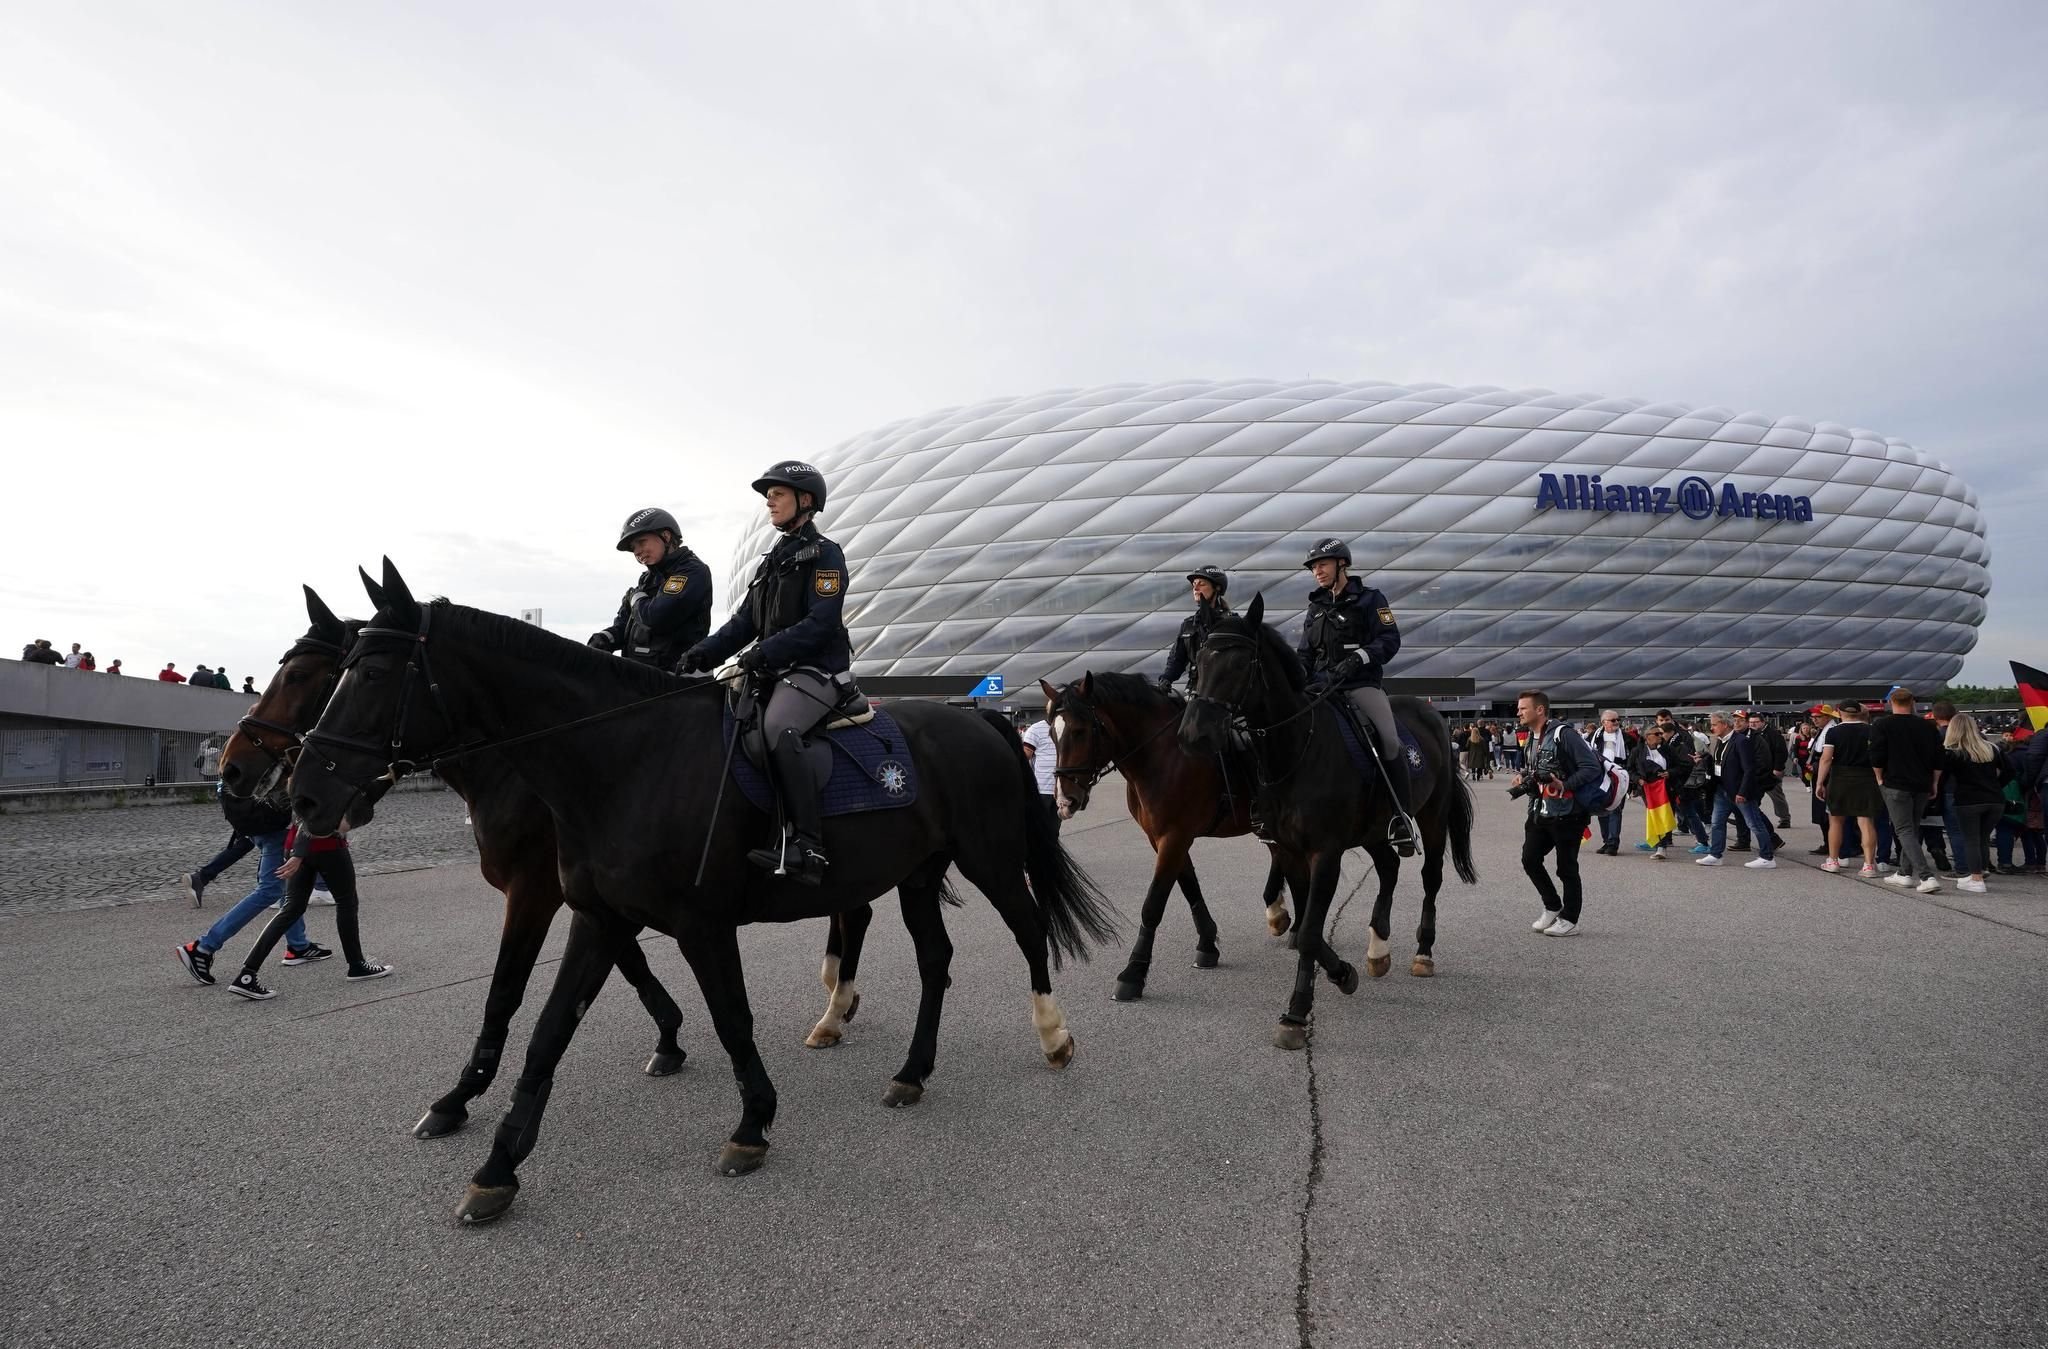 La sécurité lors du Championnat d’Europe de football pose des défis aux gouvernements fédéral et des Länder